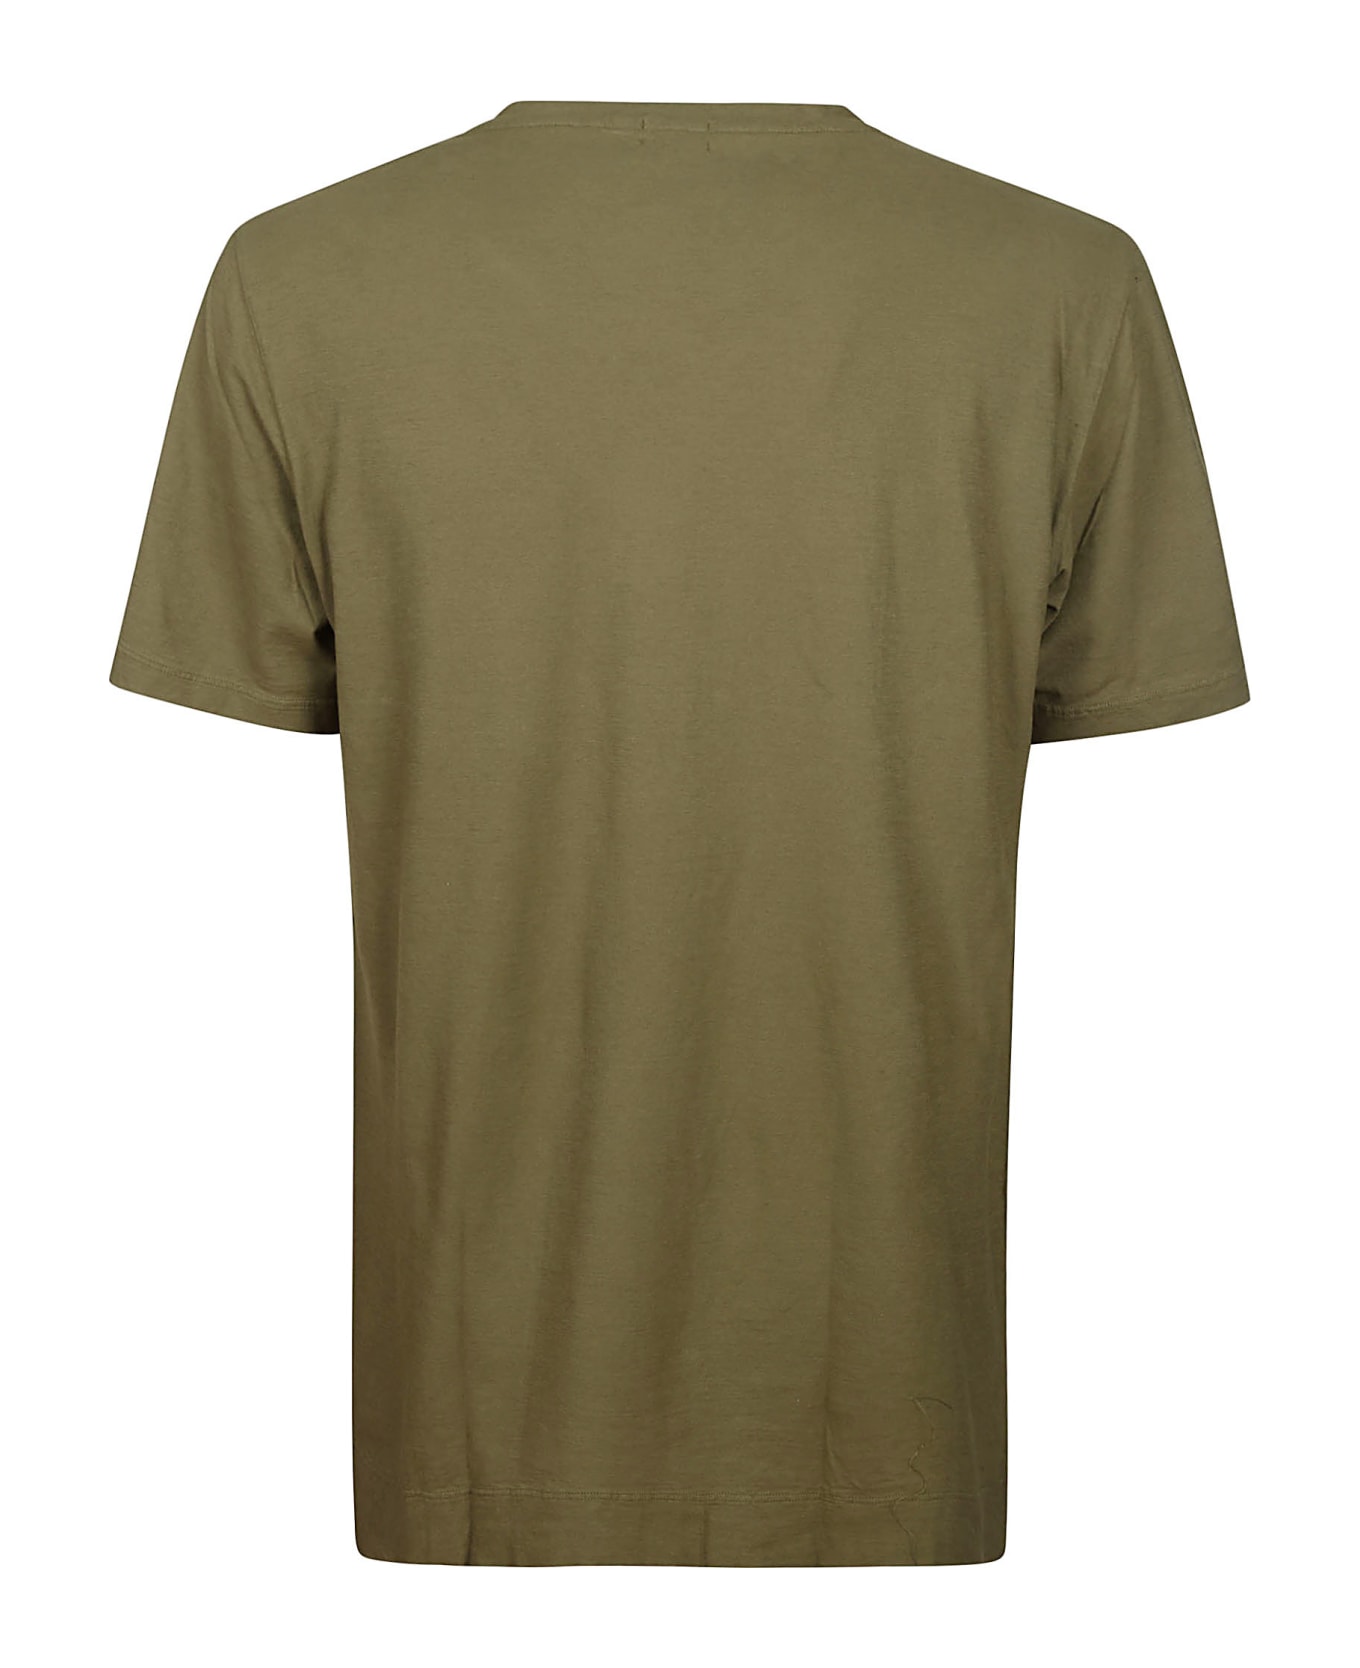 Massimo Alba T-shirt - Green Desert